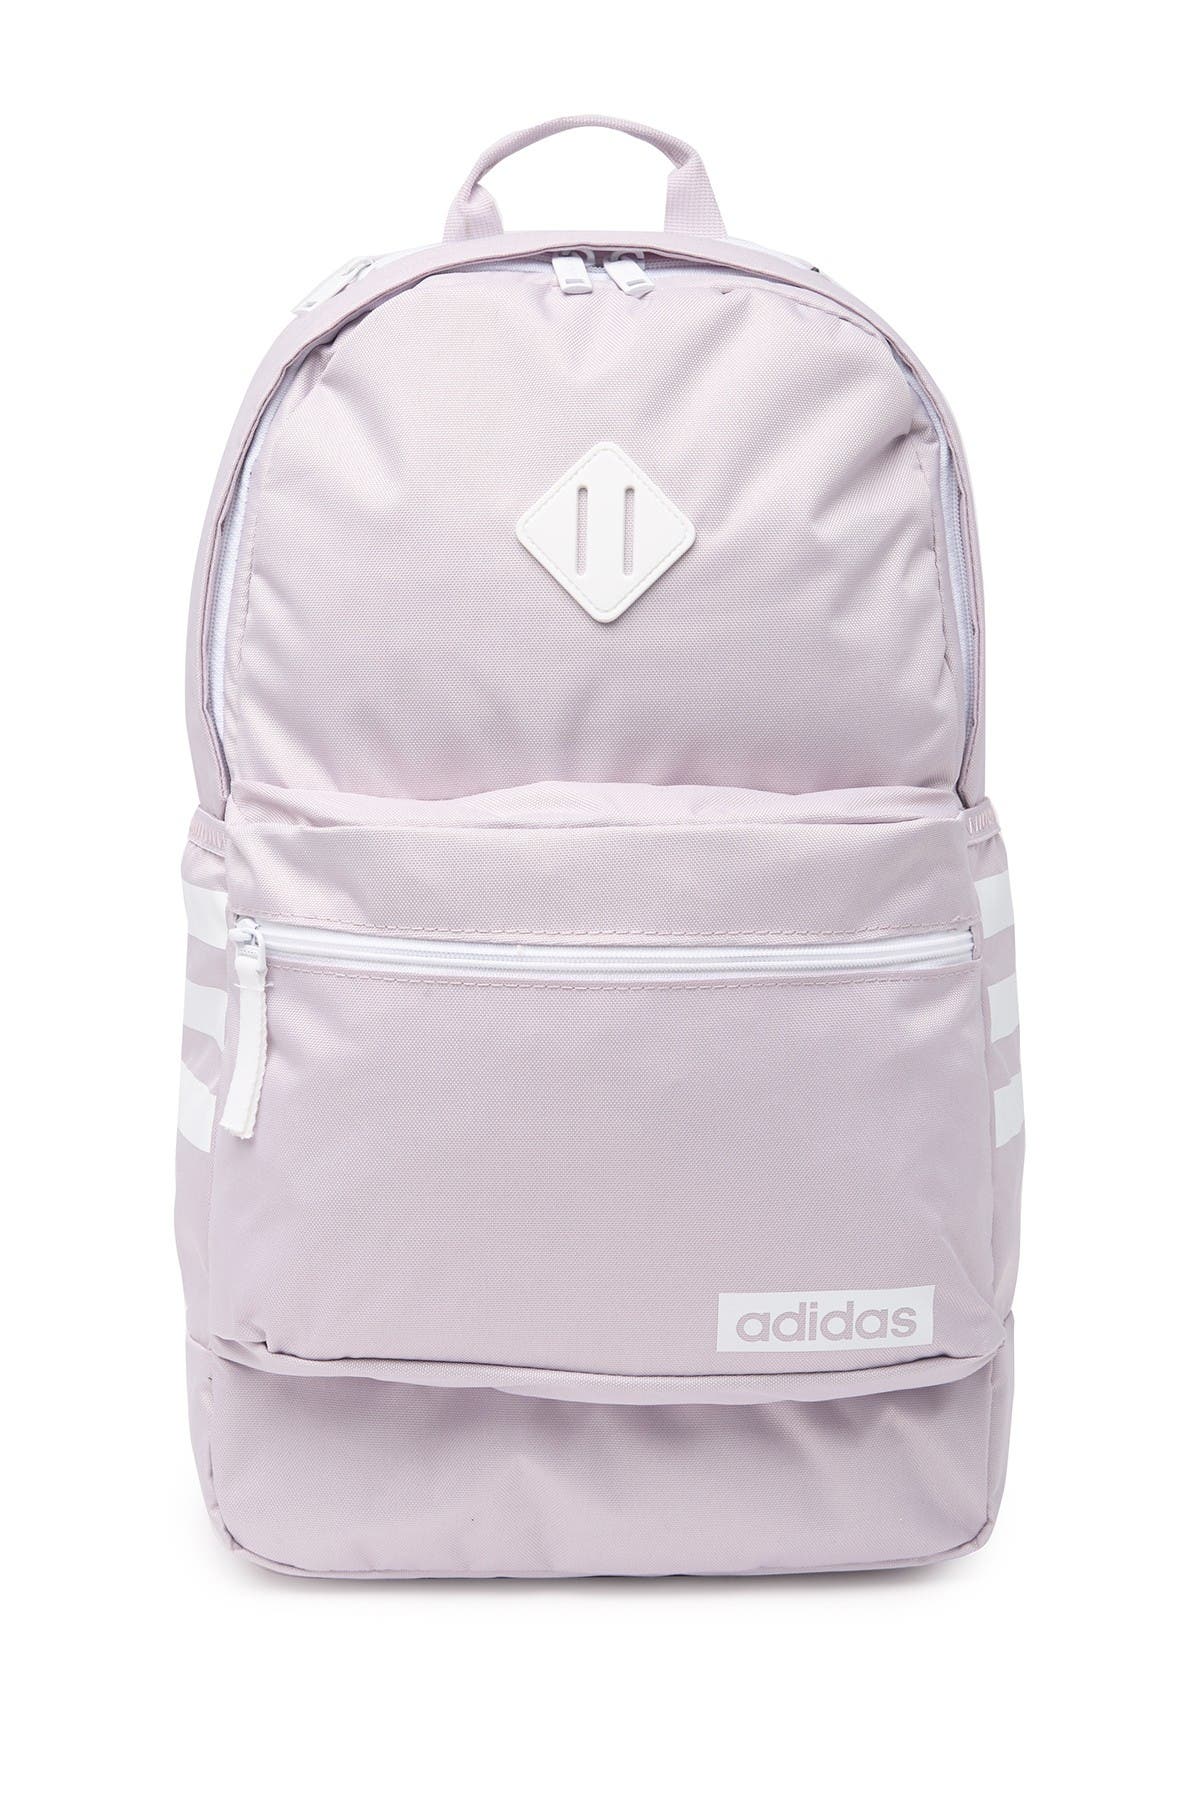 adidas 3s iii backpack